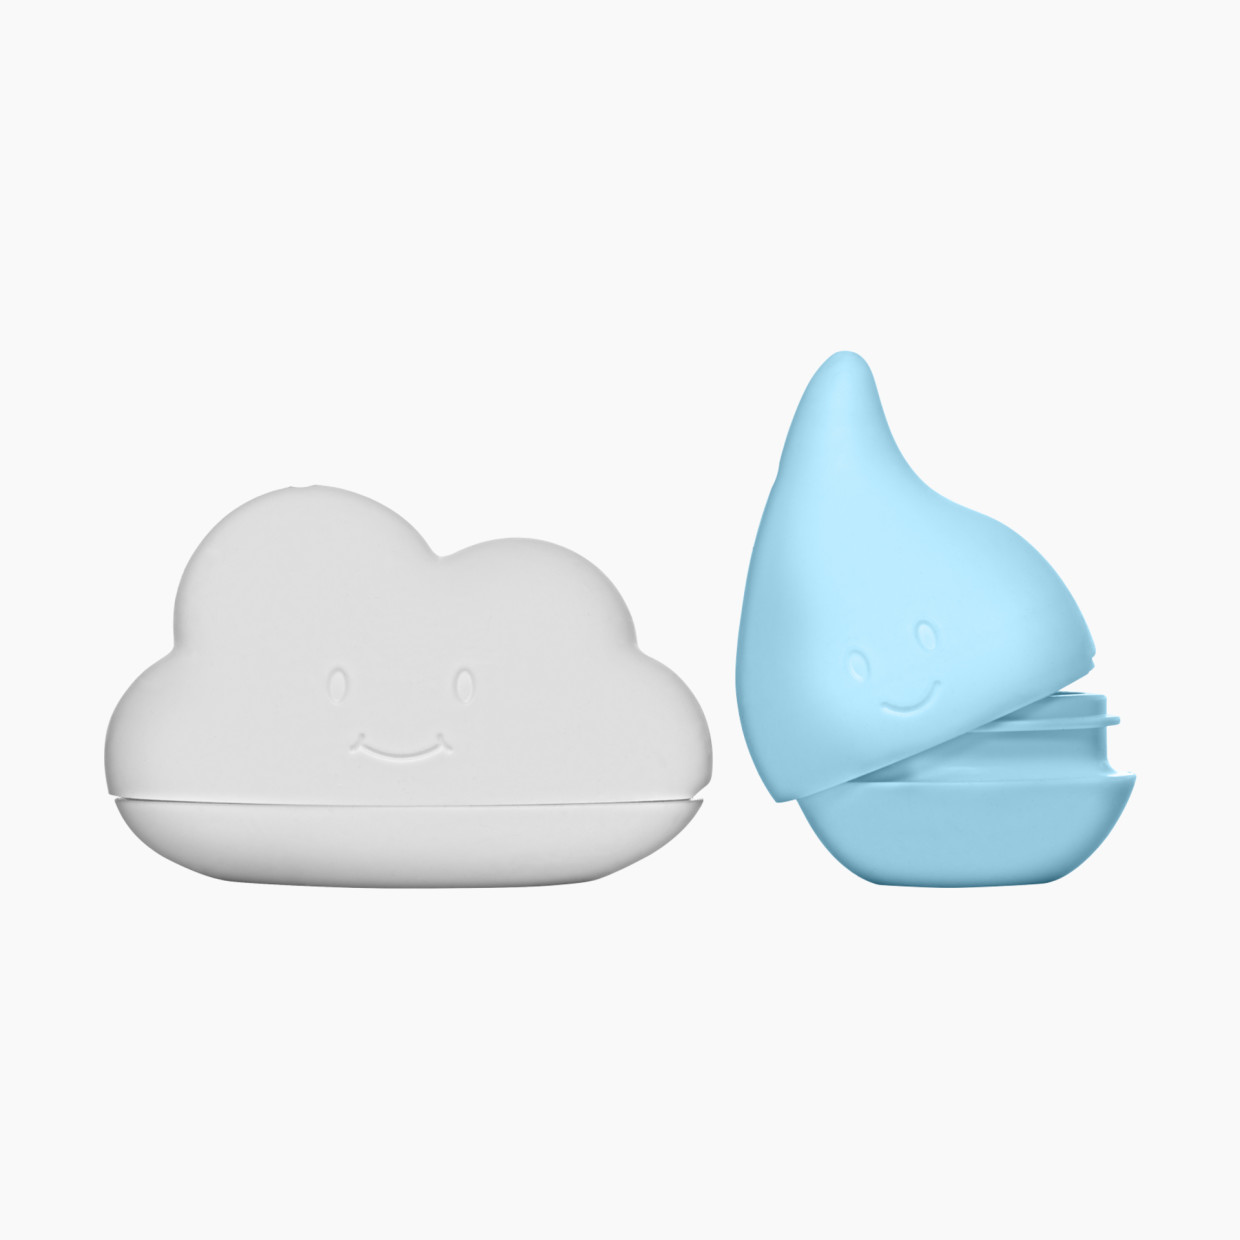 Ubbi Cloud & Droplet Bath Toys.